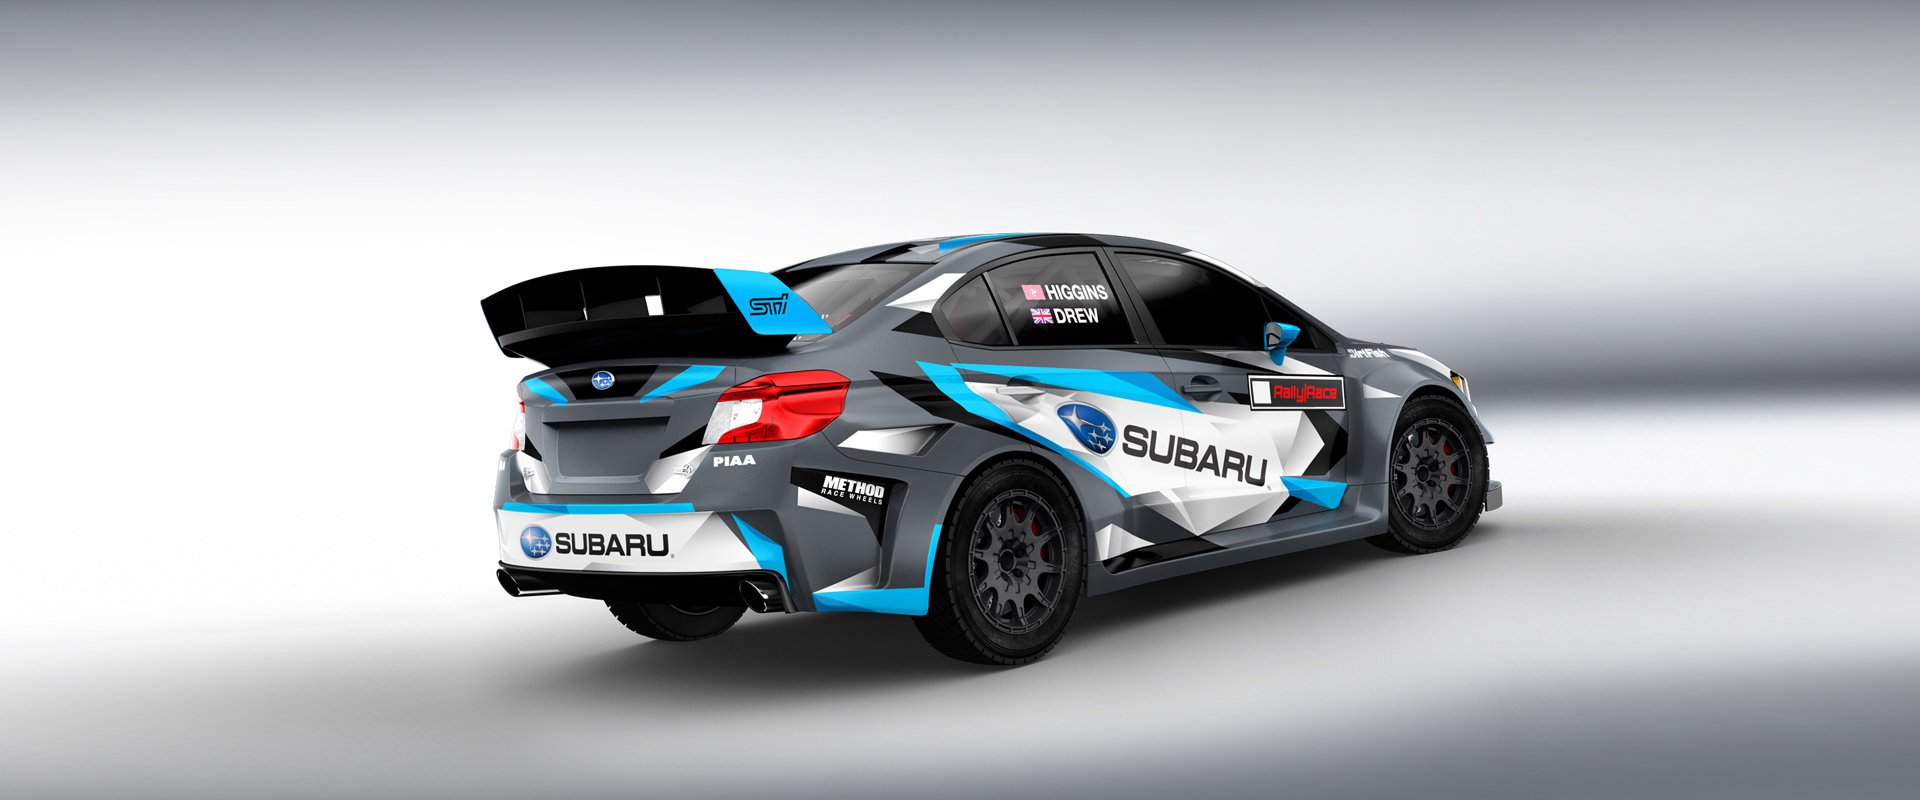 Subaru Rally Team USA #4